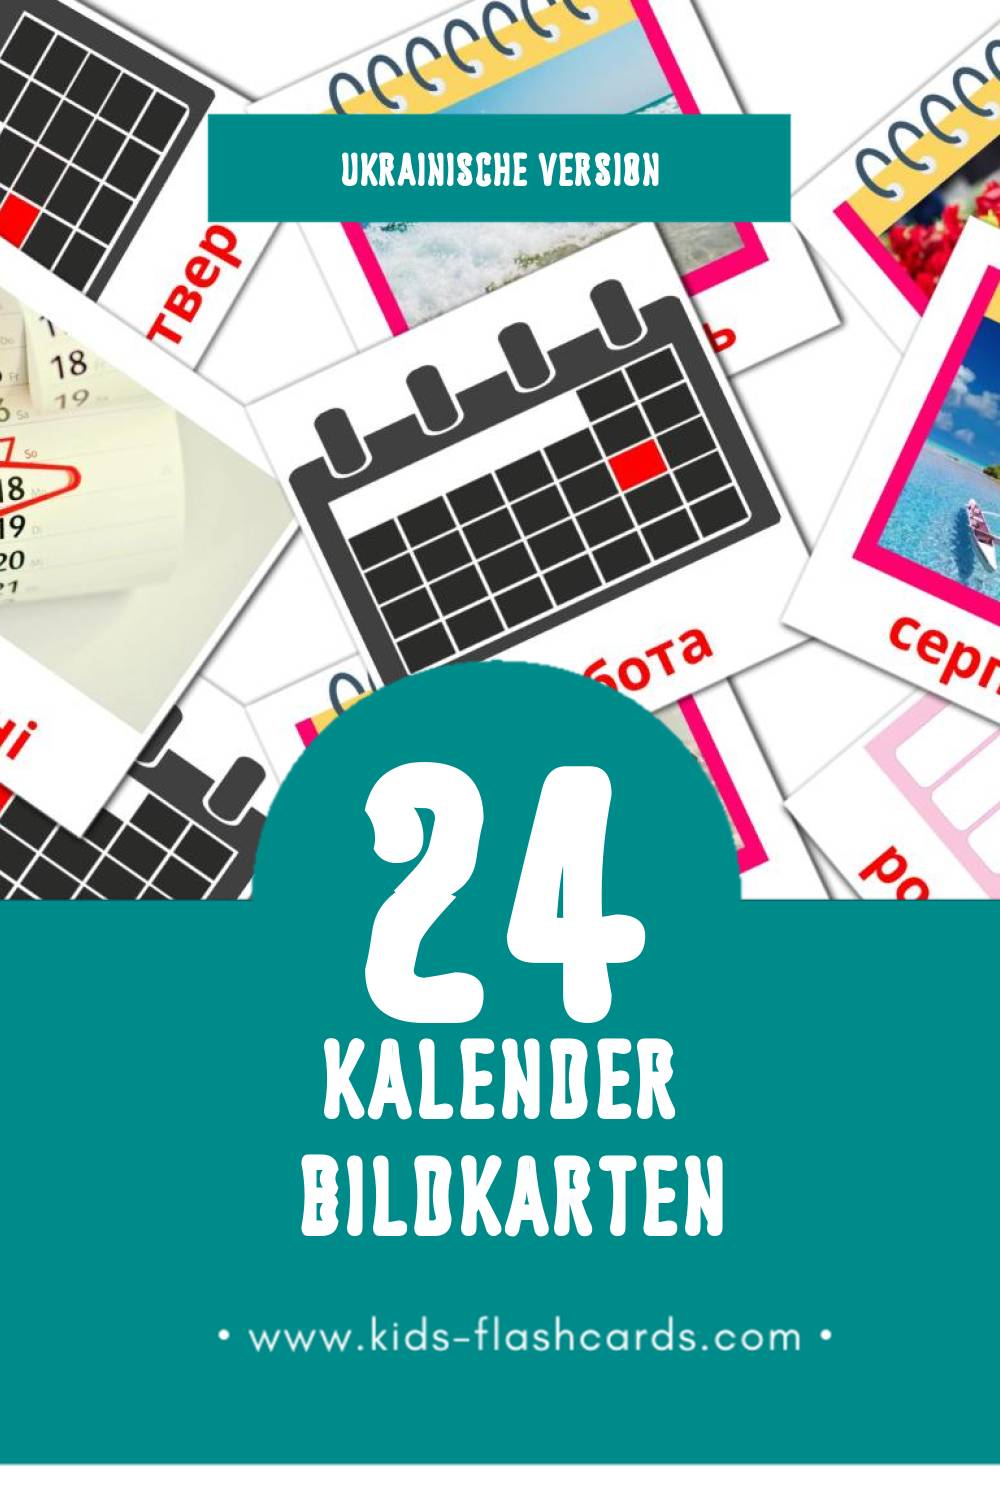 Visual календарь Flashcards für Kleinkinder (24 Karten in Ukrainisch)